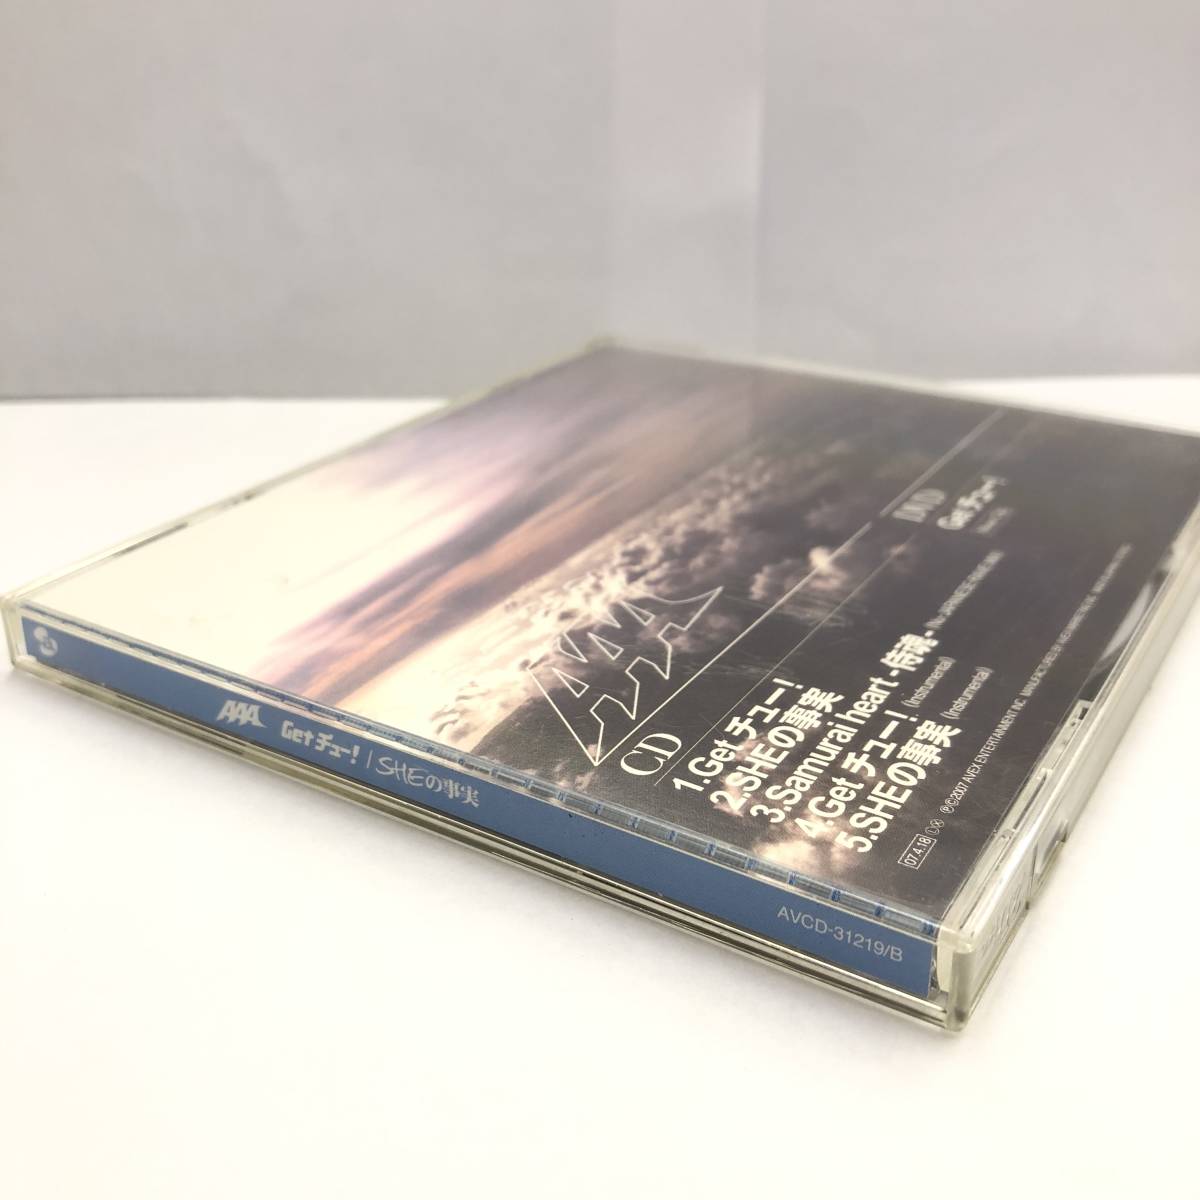 音楽CD 「AAA：Get チュー! / SHEの事実」 ミュージッククリップDVD付き J-POP 邦楽 中古_画像9